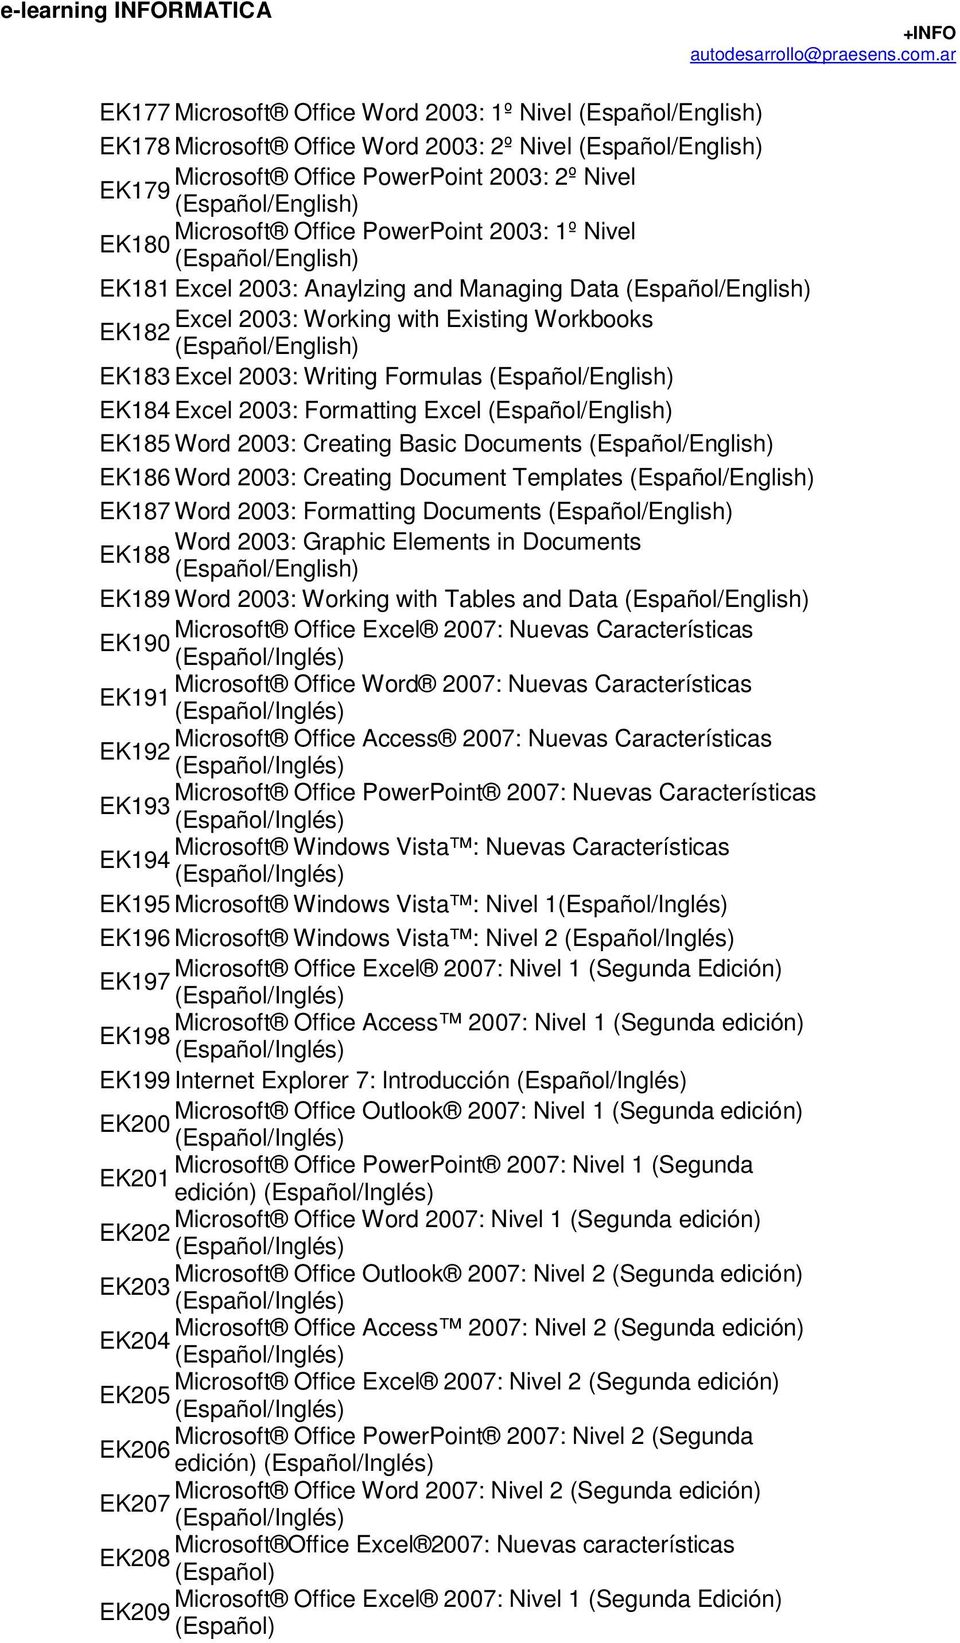 EK186 Word 2003: Creating Document Templates EK187 Word 2003: Formatting Documents Word 2003: Graphic Elements in Documents EK188 EK189 Word 2003: Working with Tables and Data Microsoft Office Excel